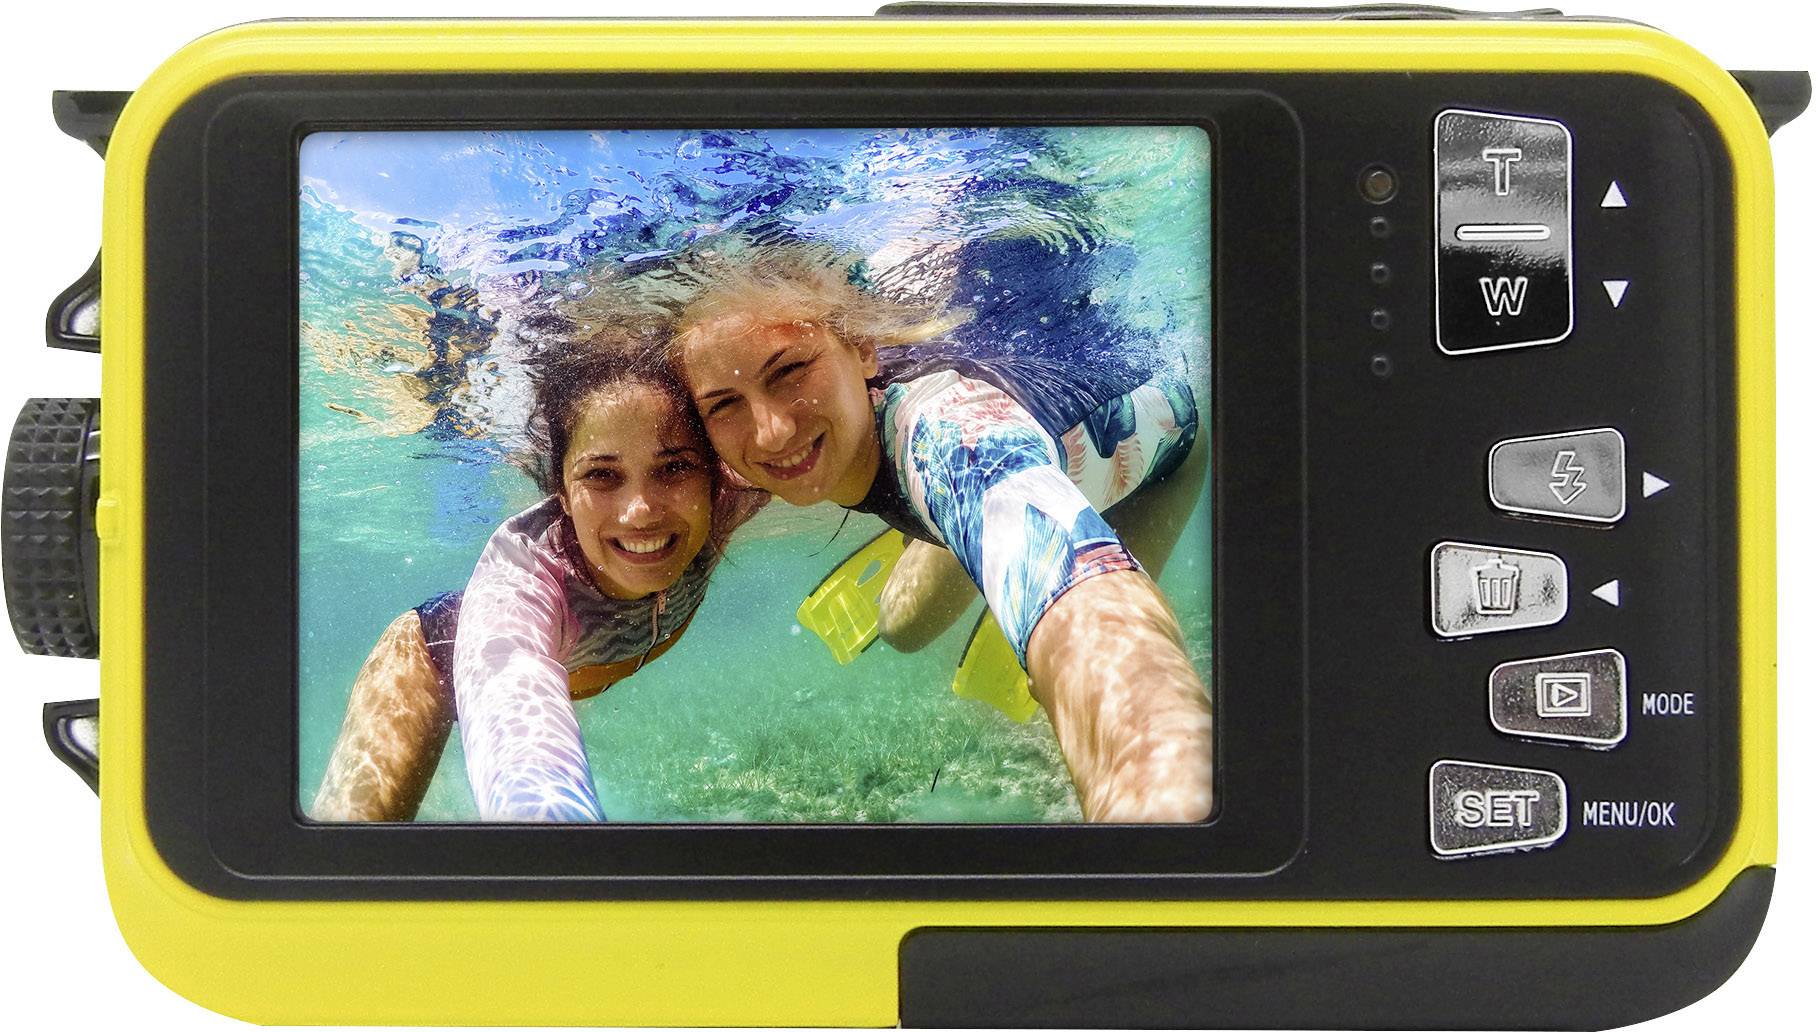 waterproof digital video camera